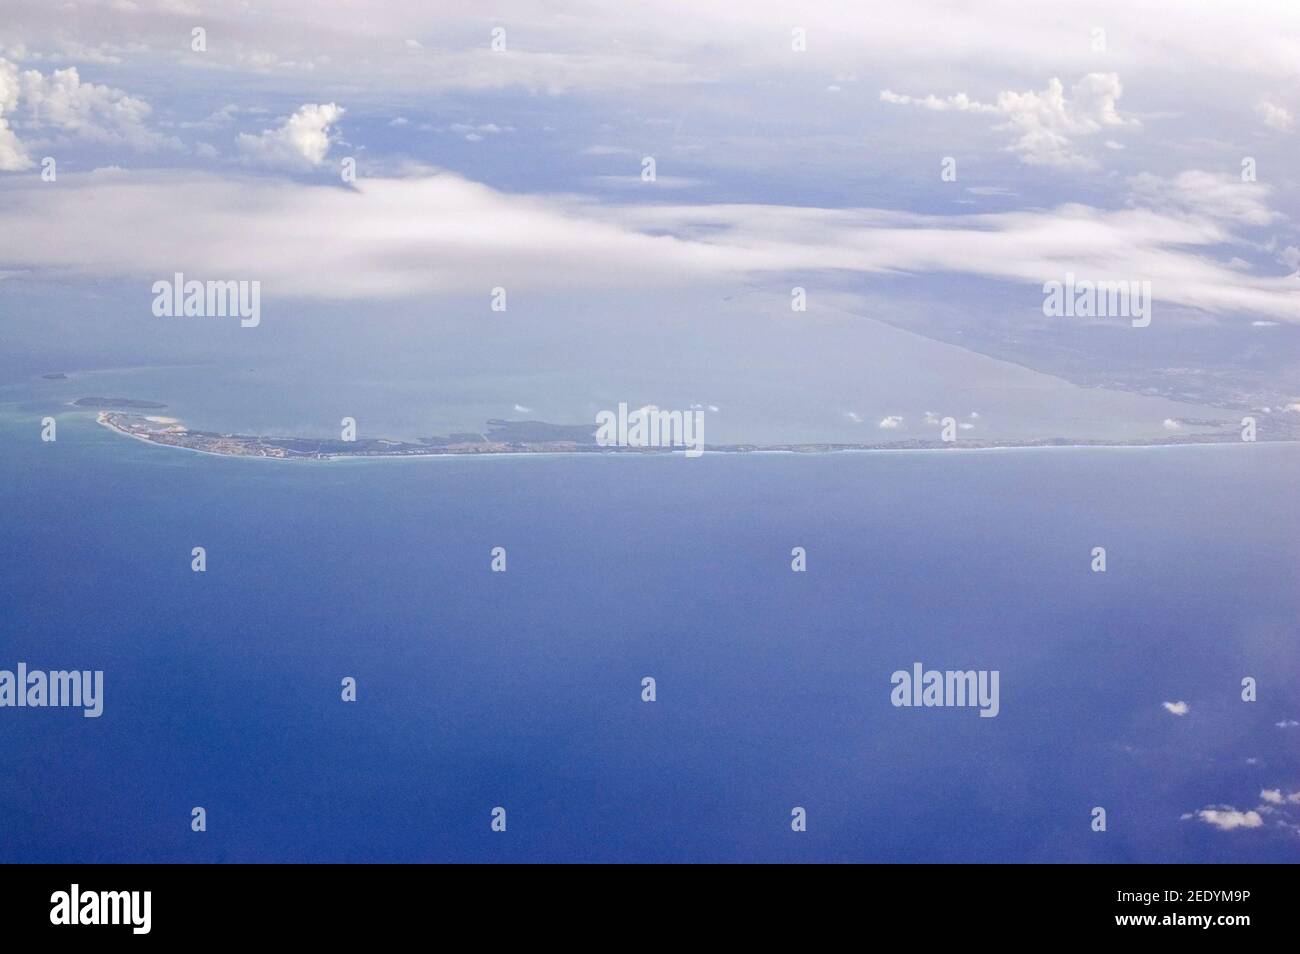 La penisola di Varadero nel nord di Cuba, vista da un aereo. La posizione caraibica e' casa di molti hotel e resort sulla spiaggia di alta classe. Foto Stock